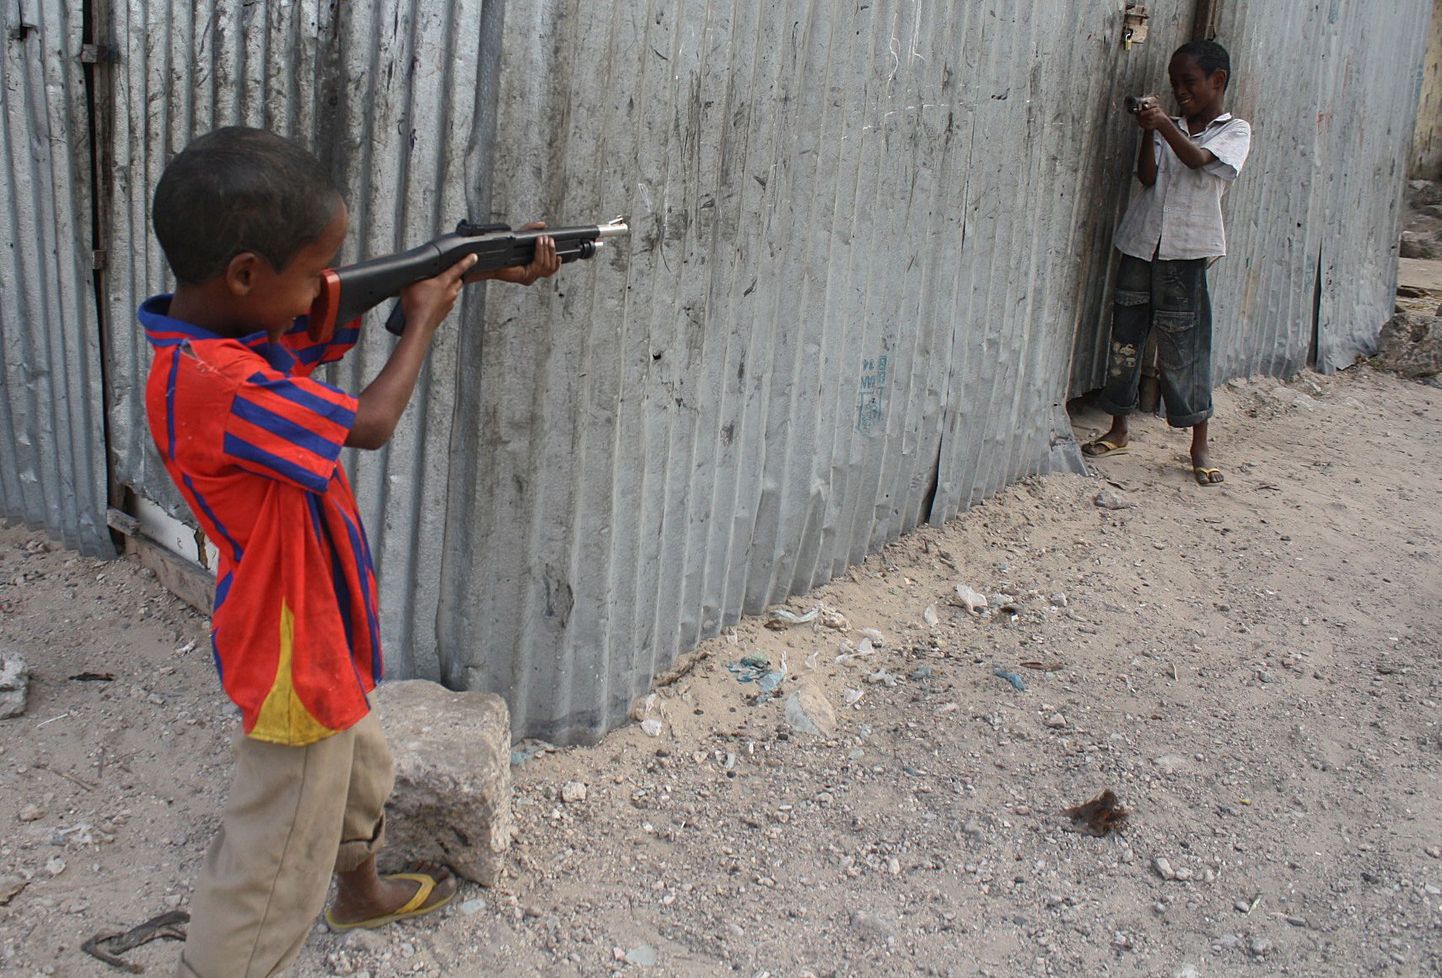 Somaalia lapsed eelmisel kuul mängupüssidega mängimas.